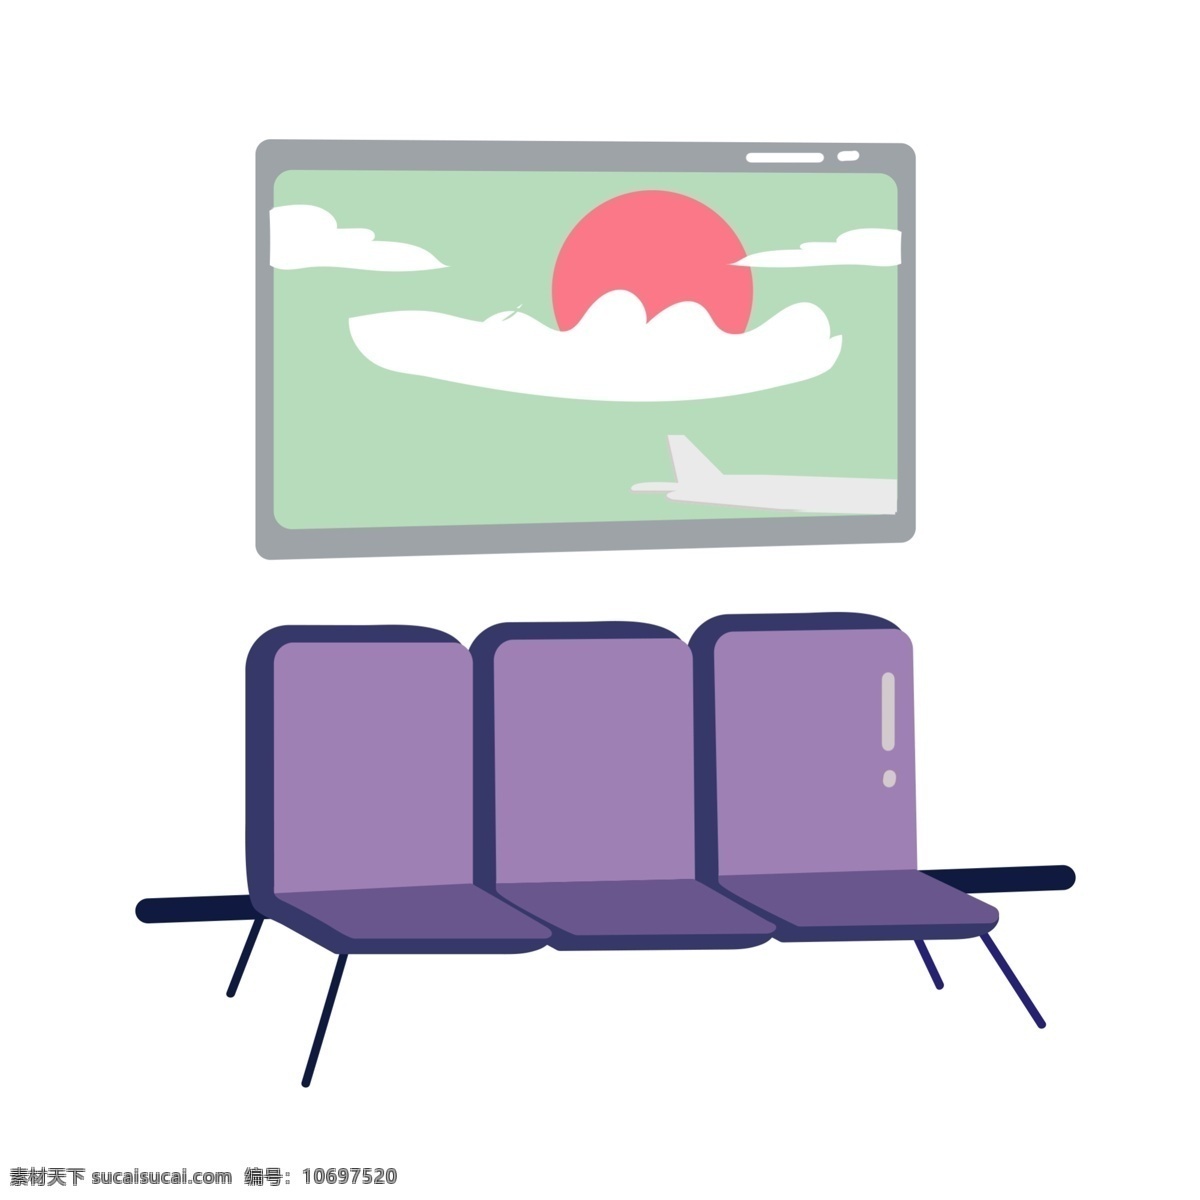 手绘 卡通 椅子 挂图 插画 手绘椅子 卡通椅子 手绘挂图 卡通挂图 火车 候车室 紫色的座椅 靠背椅 一排椅子